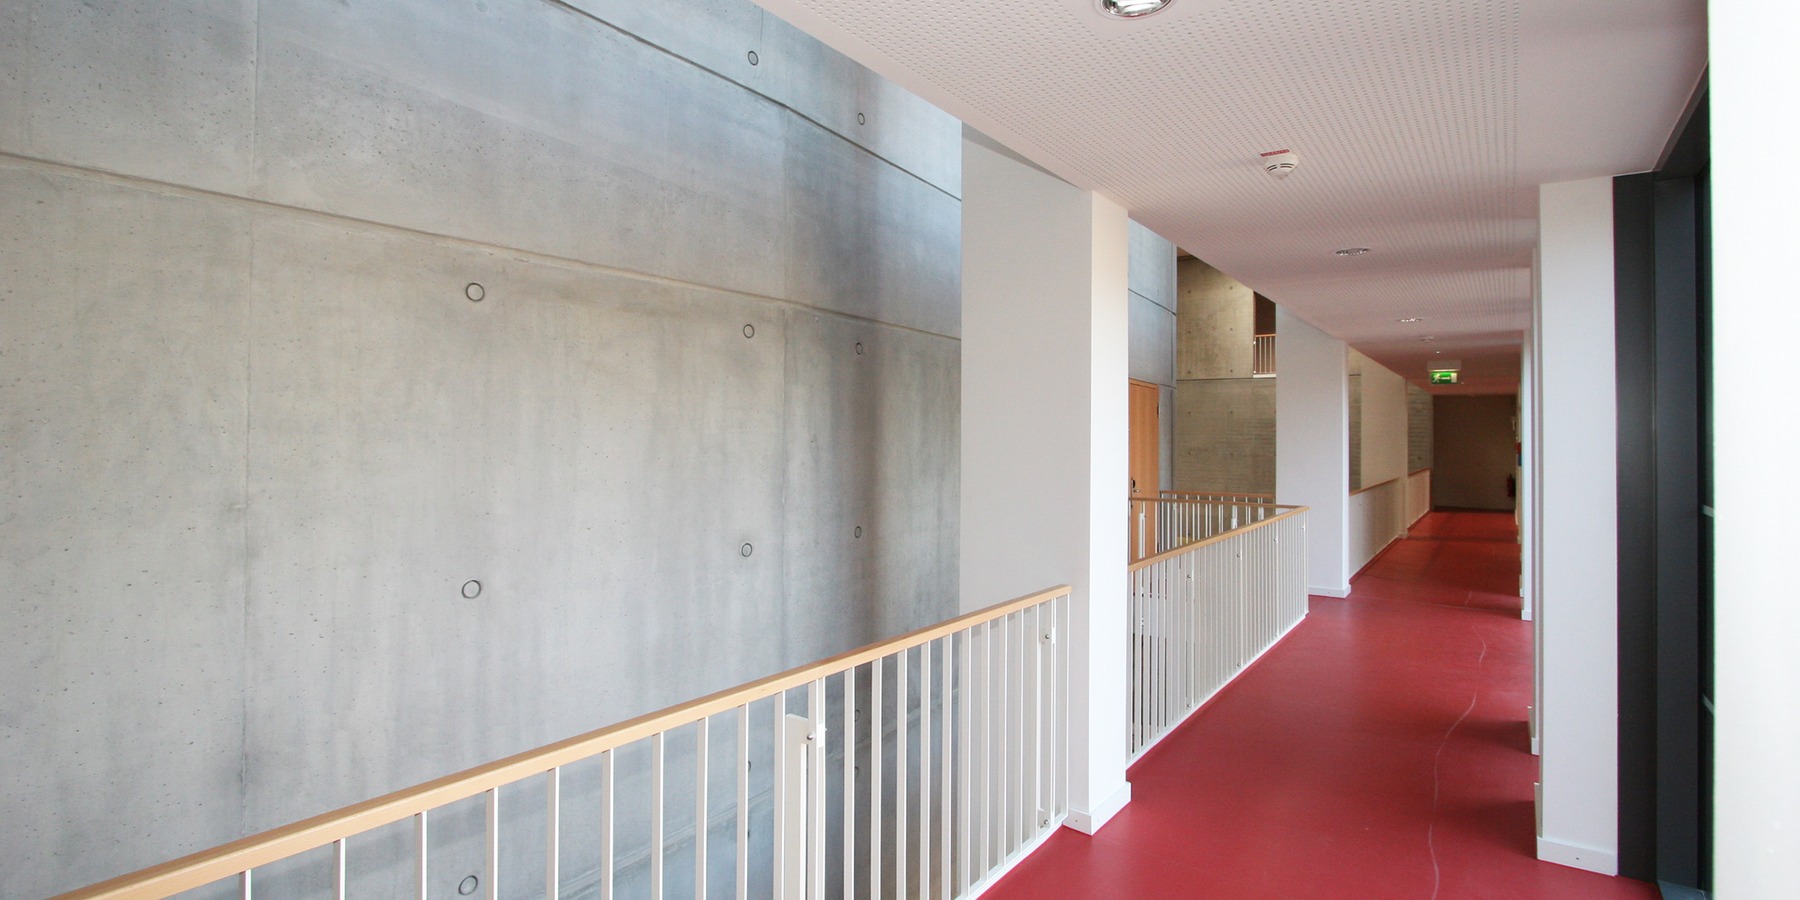 Wenige Materialien und Farben - Holz, Stahl, Sichtbeton, roter Fußboden, weiße Wände - bestimmen den Raumeindruck © 2007 Betrieb für Bau und Liegenschaften MV